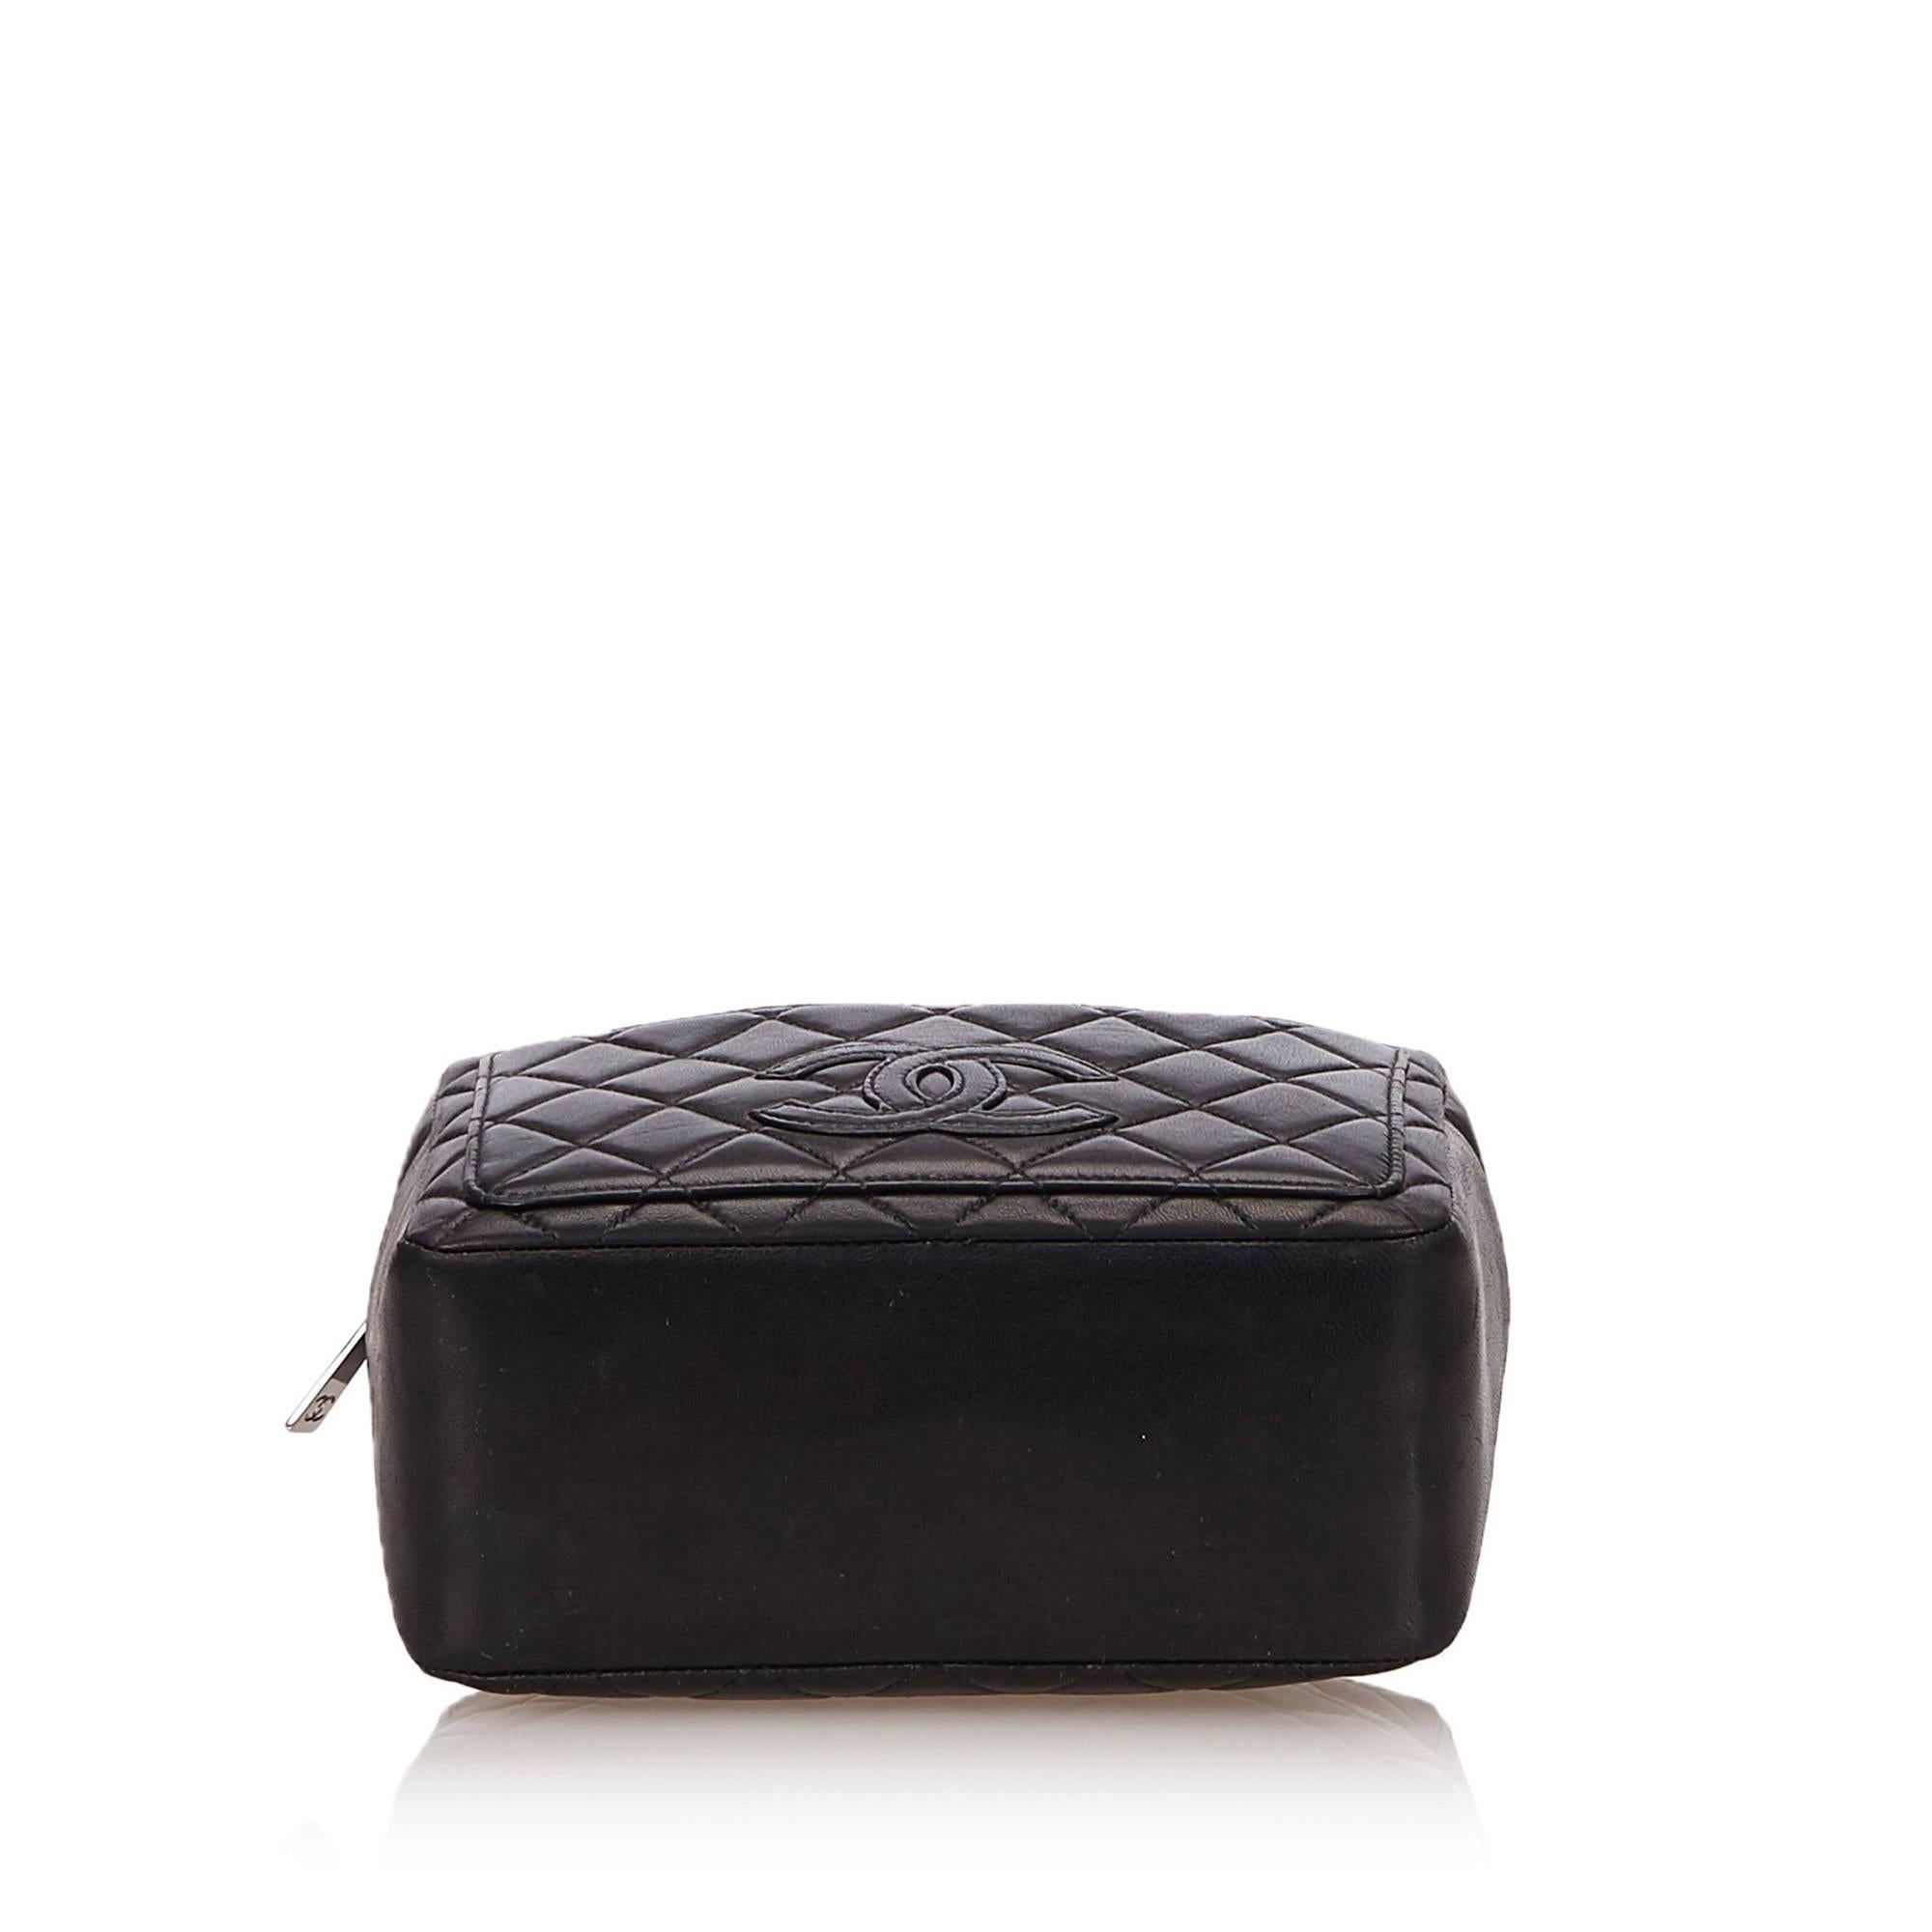 Women's or Men's Chanel Black Matelasse Lambskin Leather Handbag For Sale